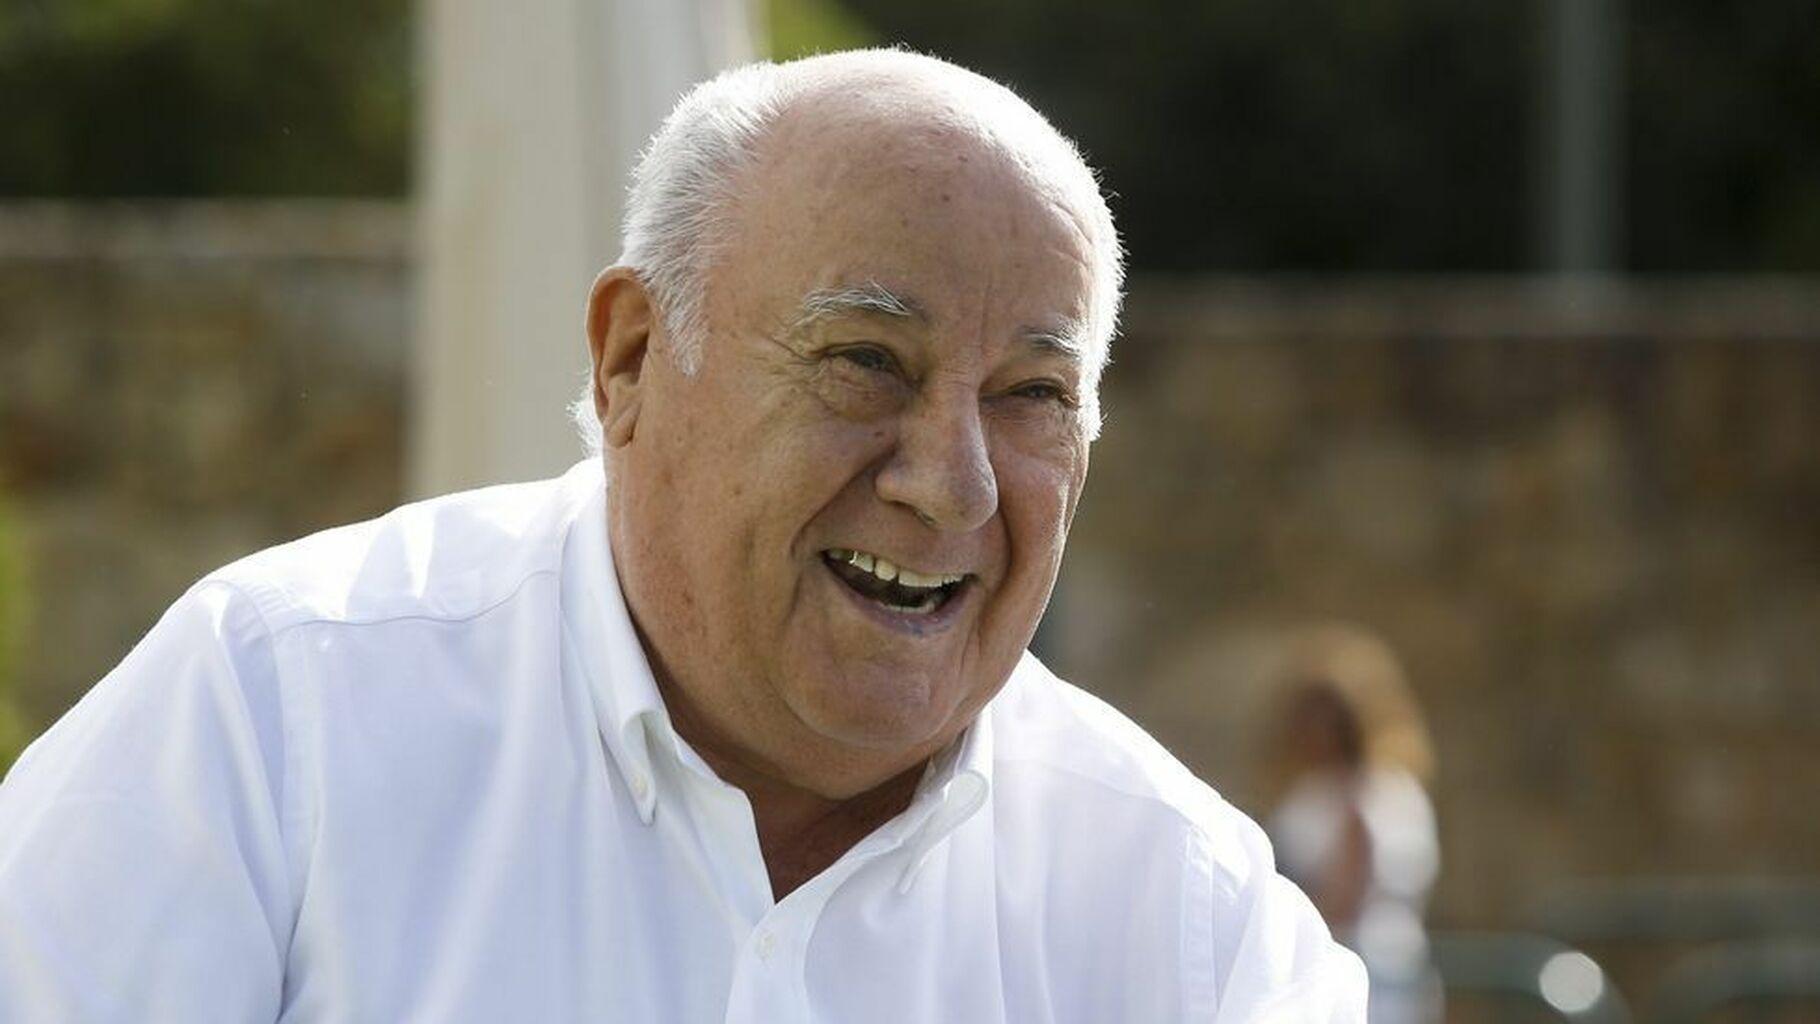 Llista Forbes 2022: Amancio Ortega segueix sent el més ric d'Espanya però amb pèrdues